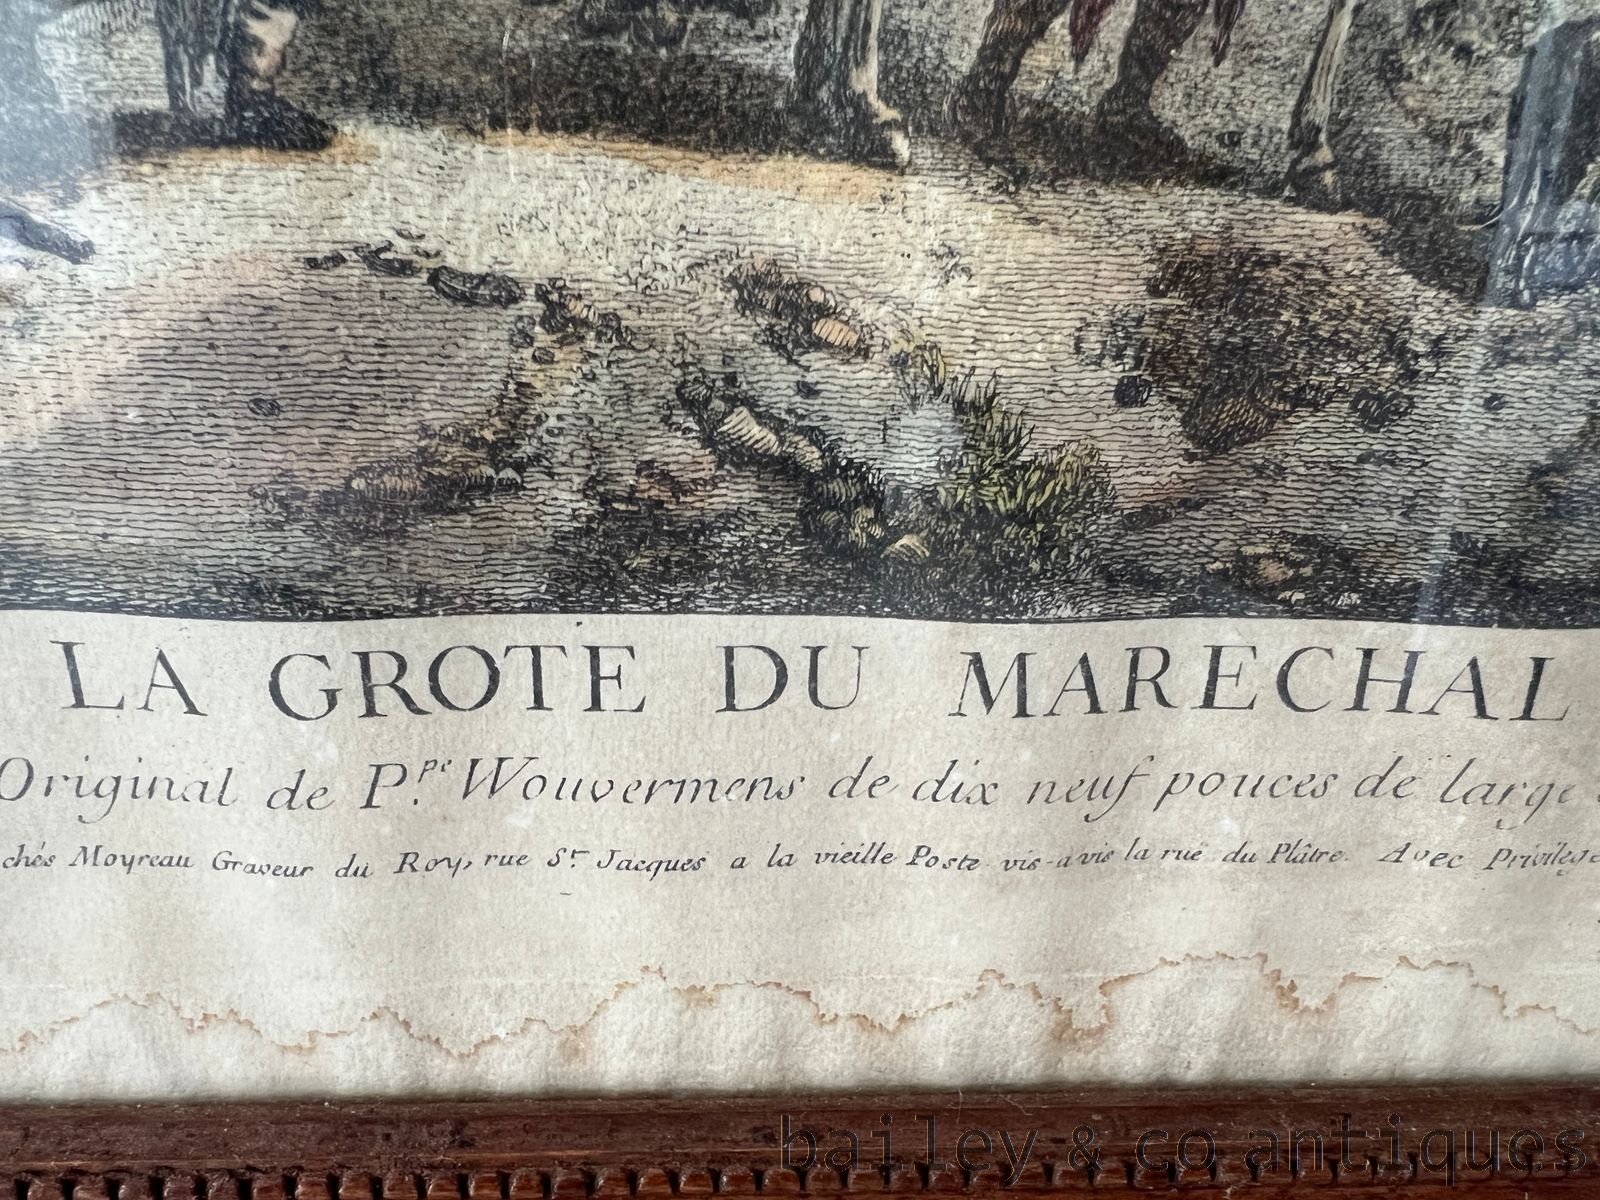 Antique French Moyreau After Wouvermens copper engraving La Grote Du Marechal - FRgravure   detail 04